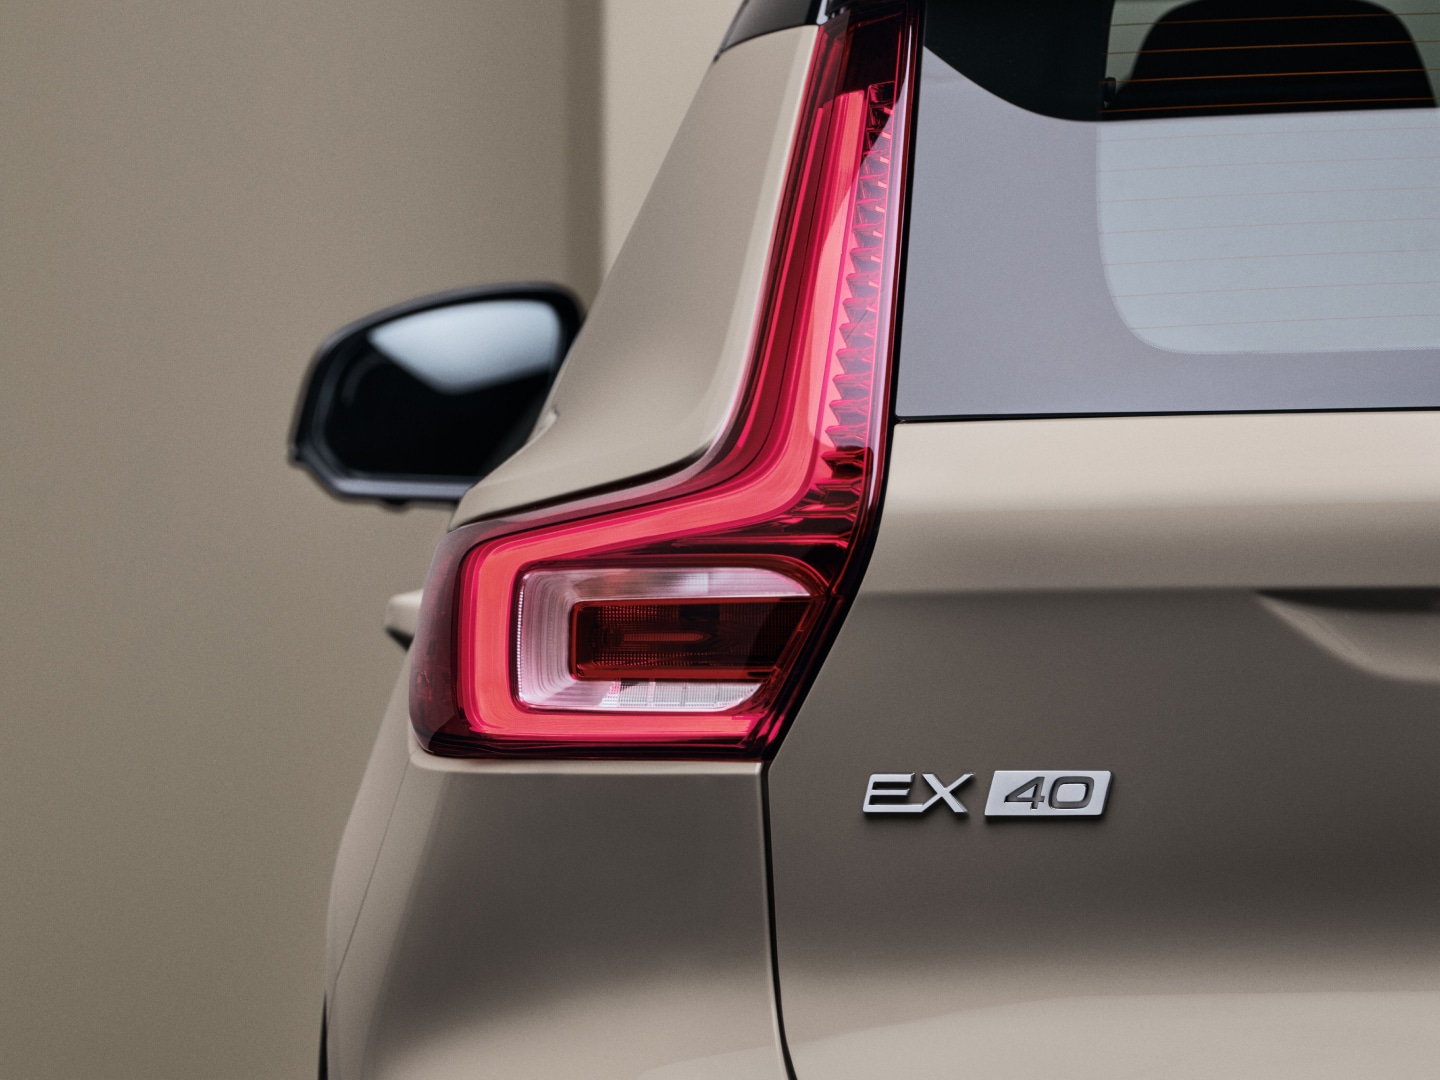 Zadné svetlá plne elektrického vozidla Volvo EX40.